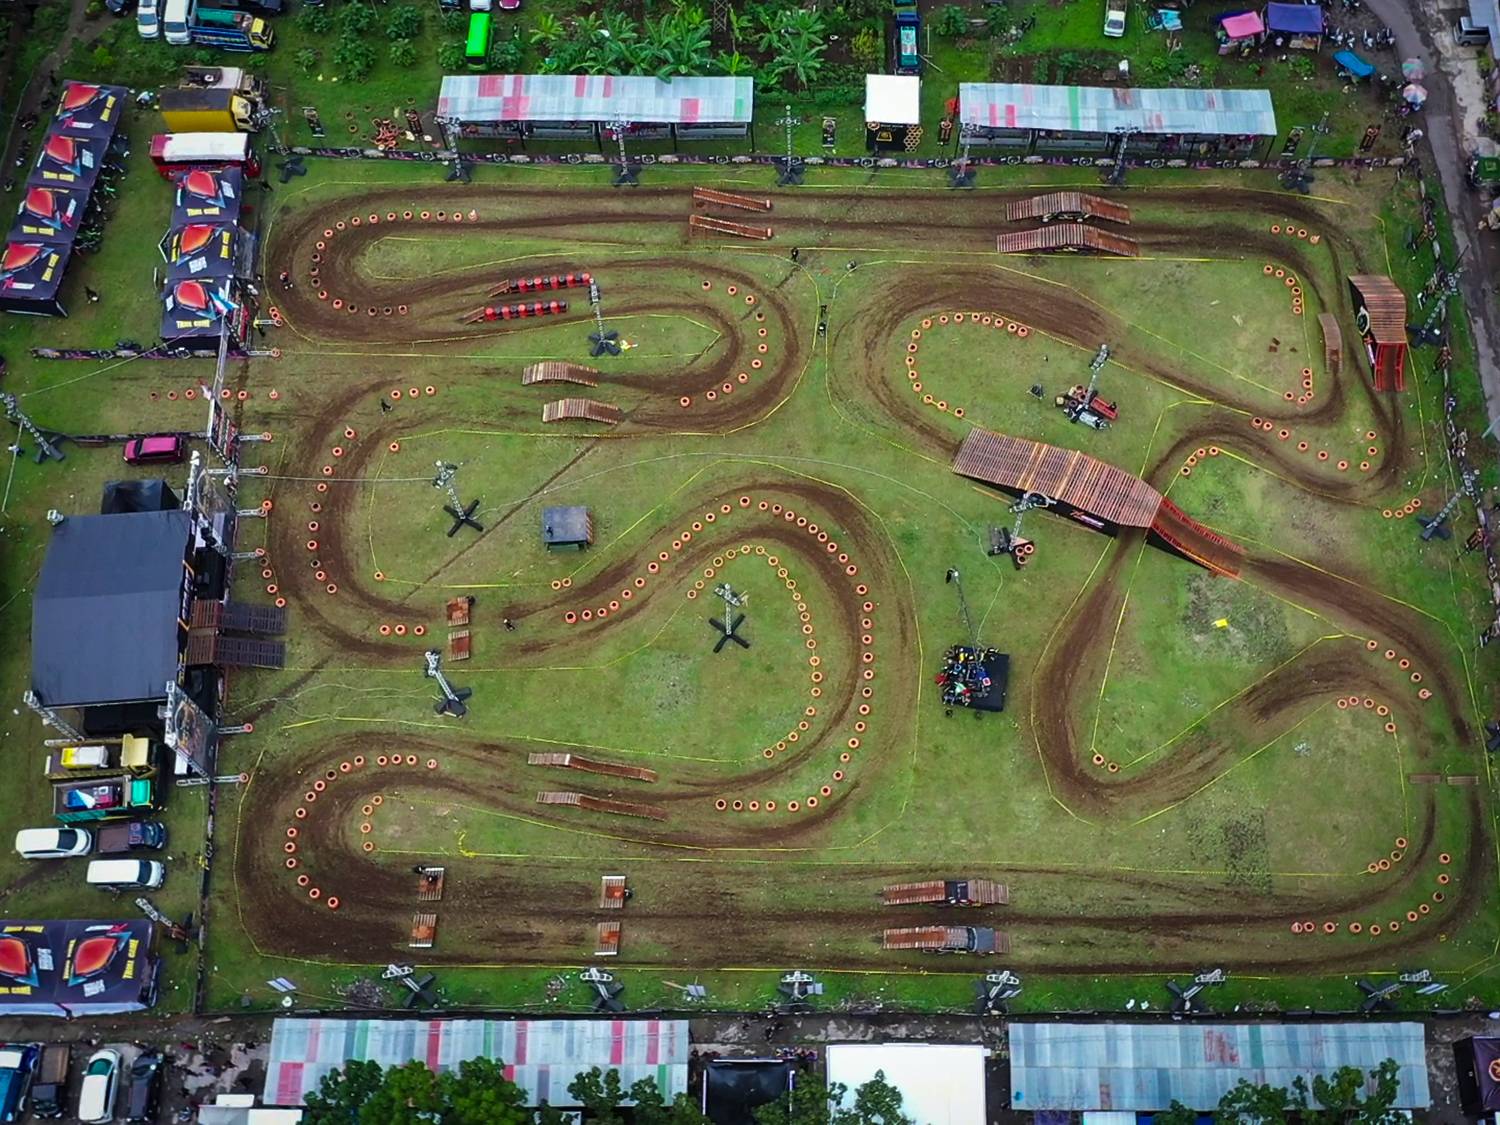 Gambar tampak atas sirkuit seri ke 3 Trial Game Dirt  di Kota Purwokerto, tepatnya di lapangan Dukuh Waluh